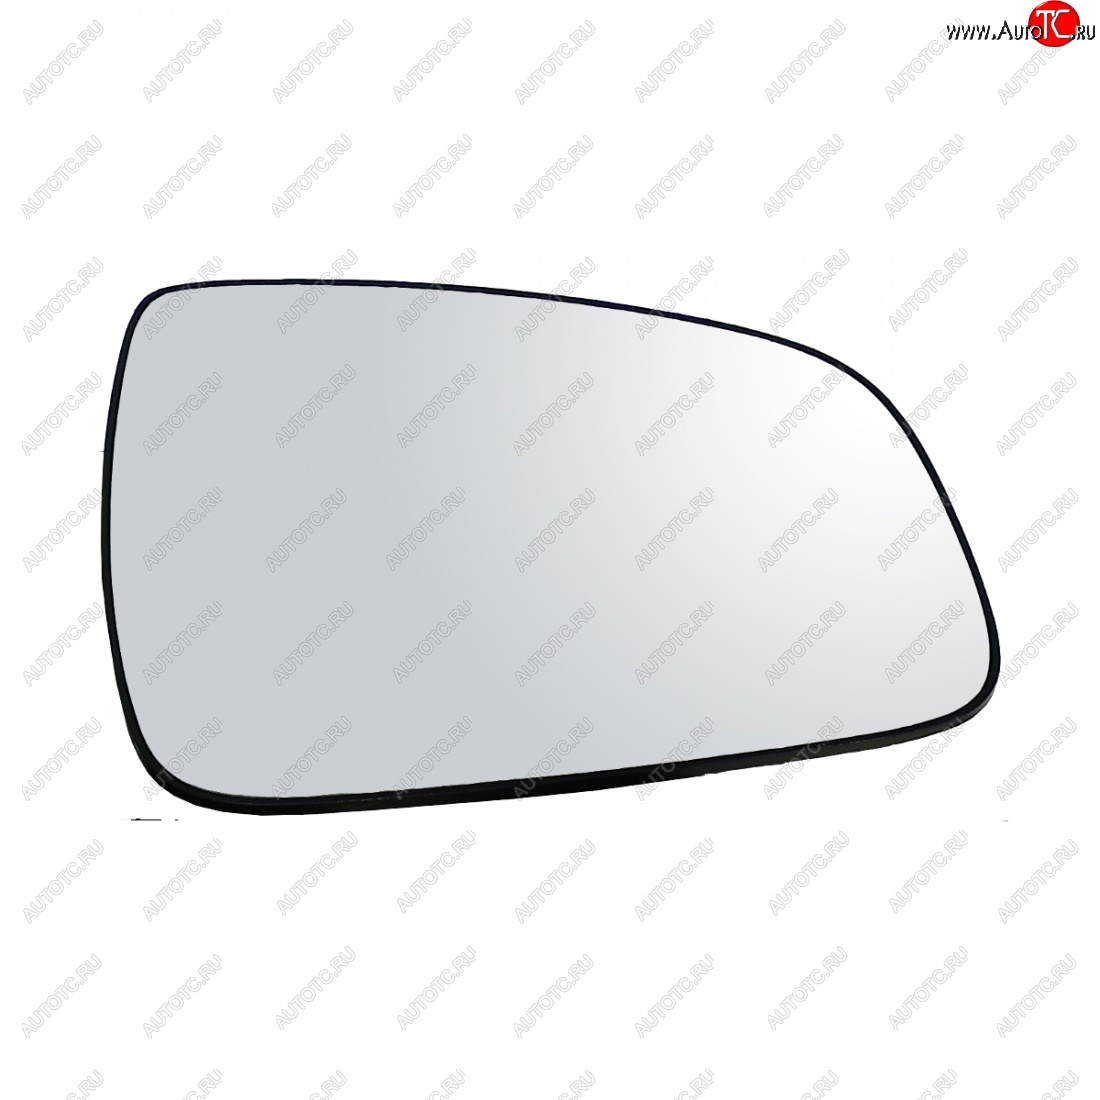 399 р. Правый зеркальный элемент (обогрев) Автоблик2 Renault Sandero (BS) (2009-2014) (без антибликового покрытия)